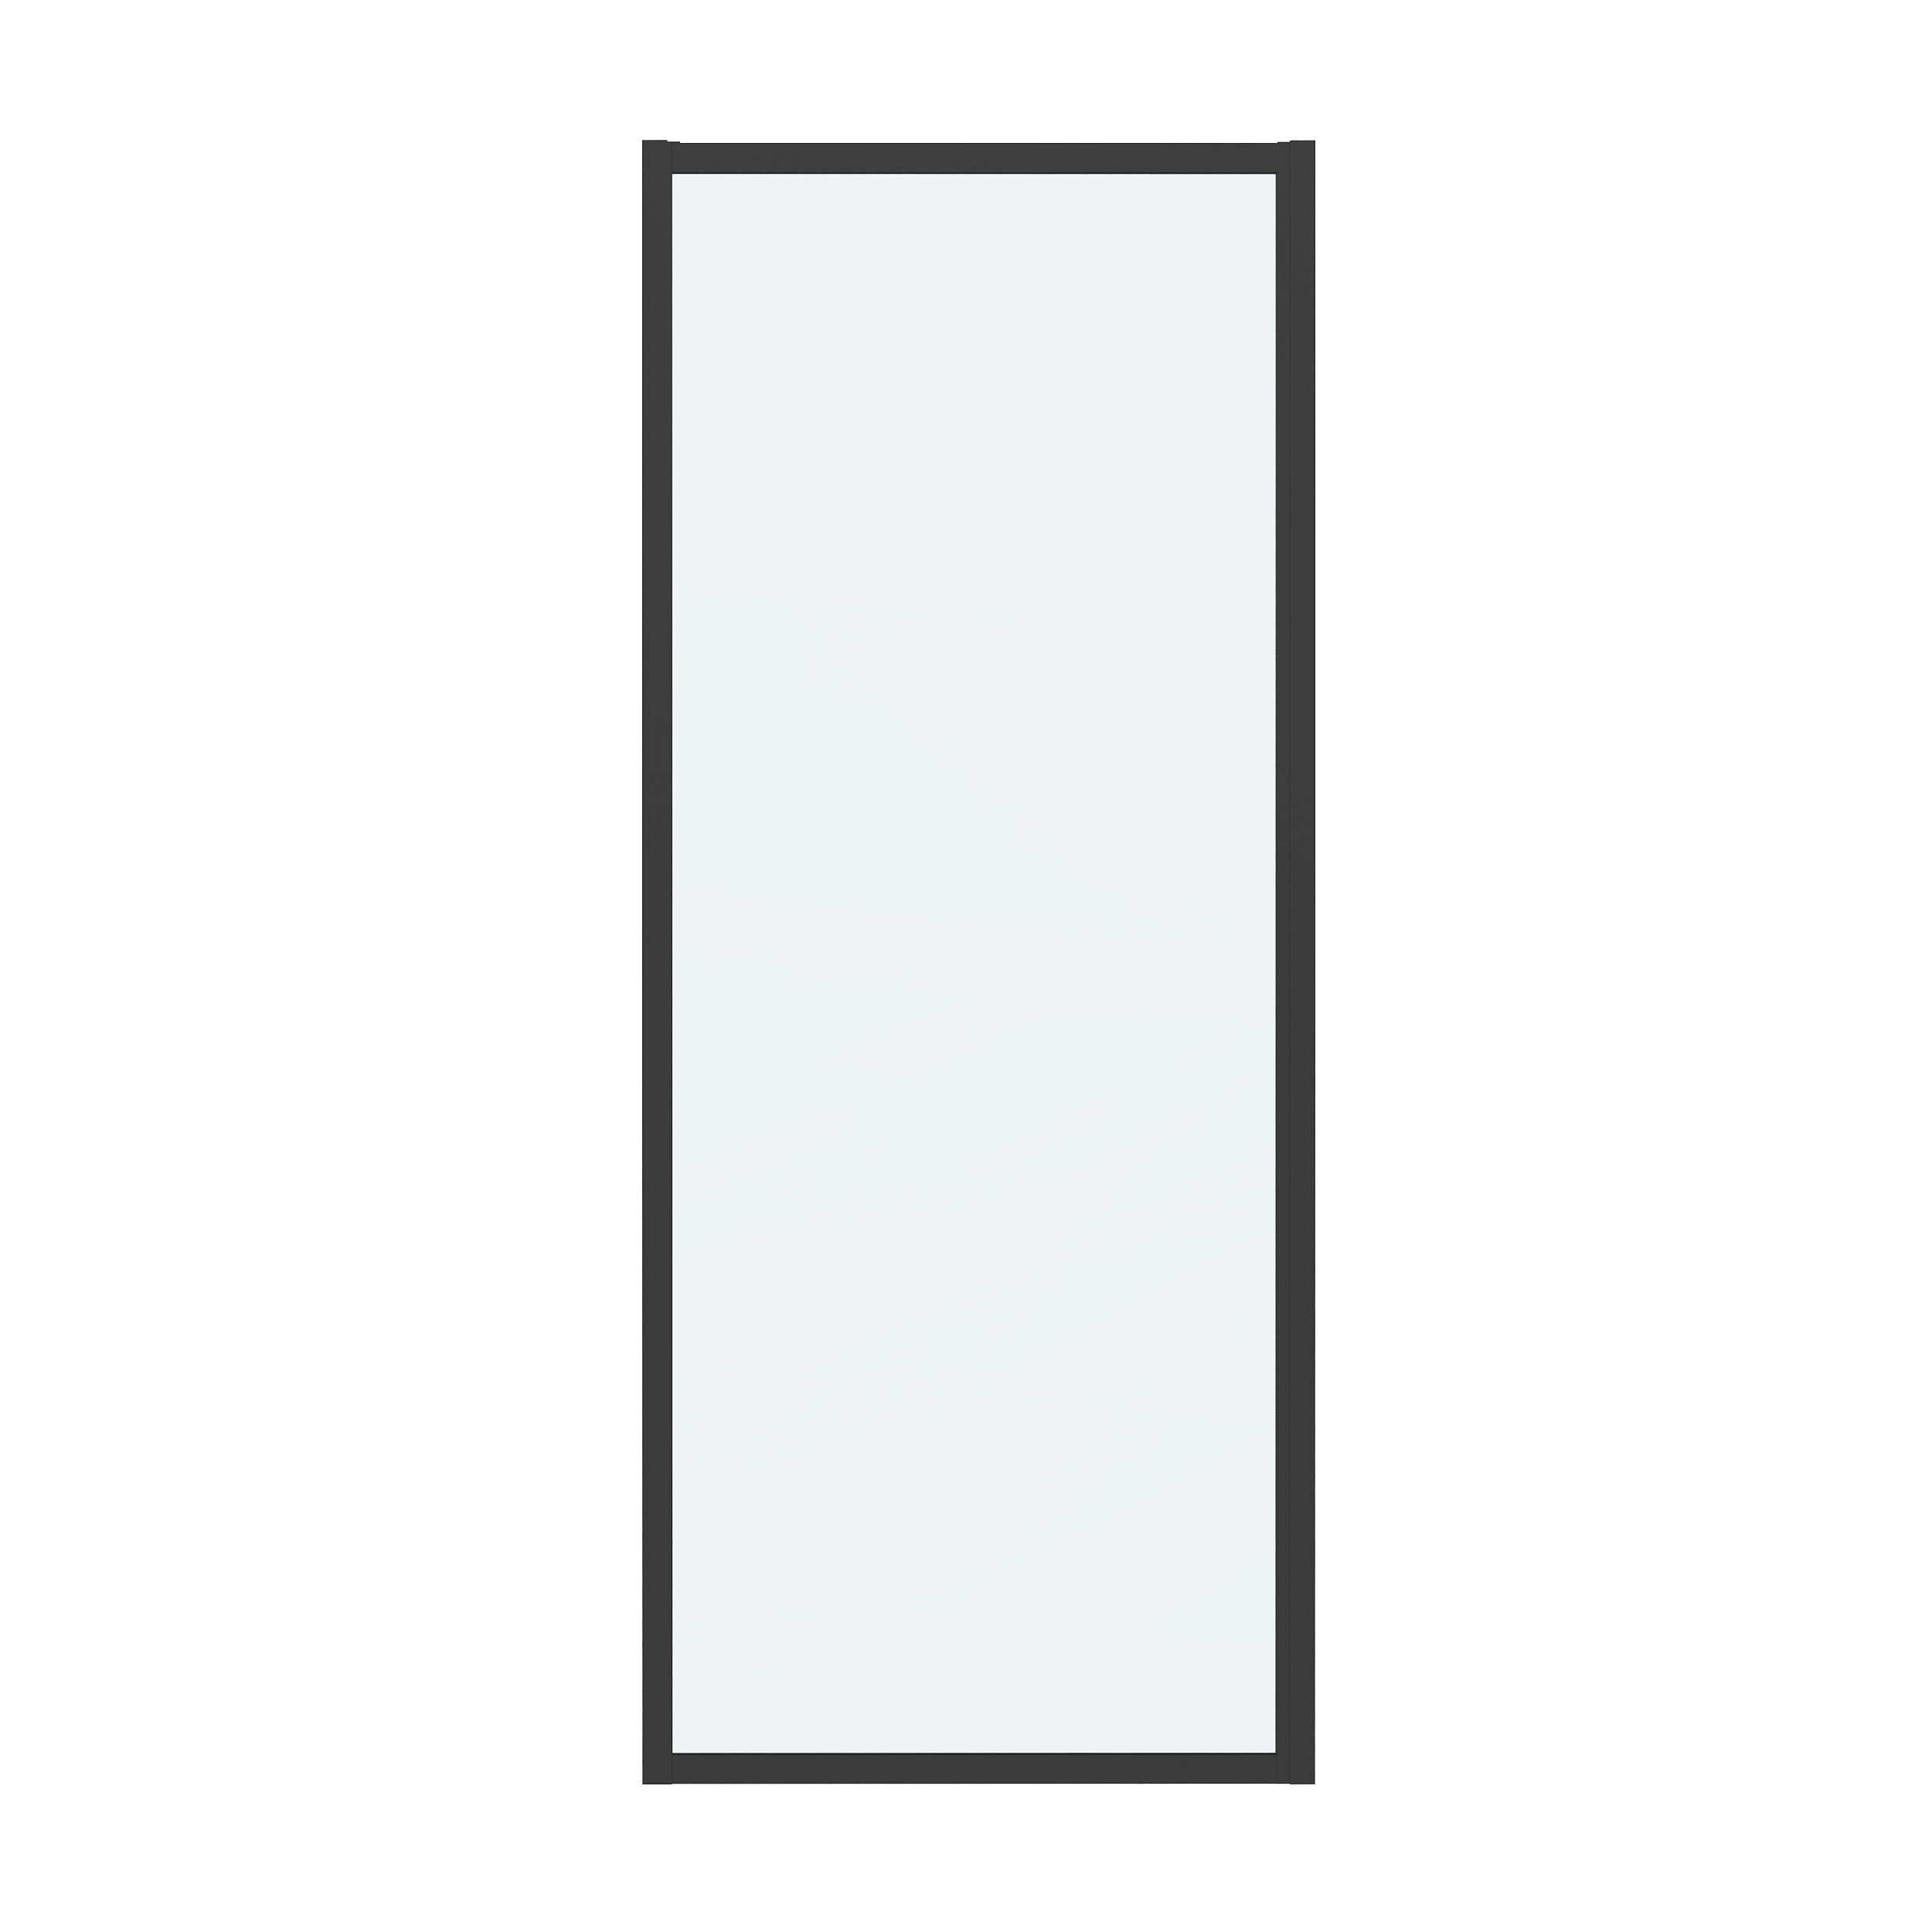 Боковая стенка Grossman Cosmo 70x195 200.K33.02.70.21.00 стекло прозрачное, профиль черный матовый - фото 1